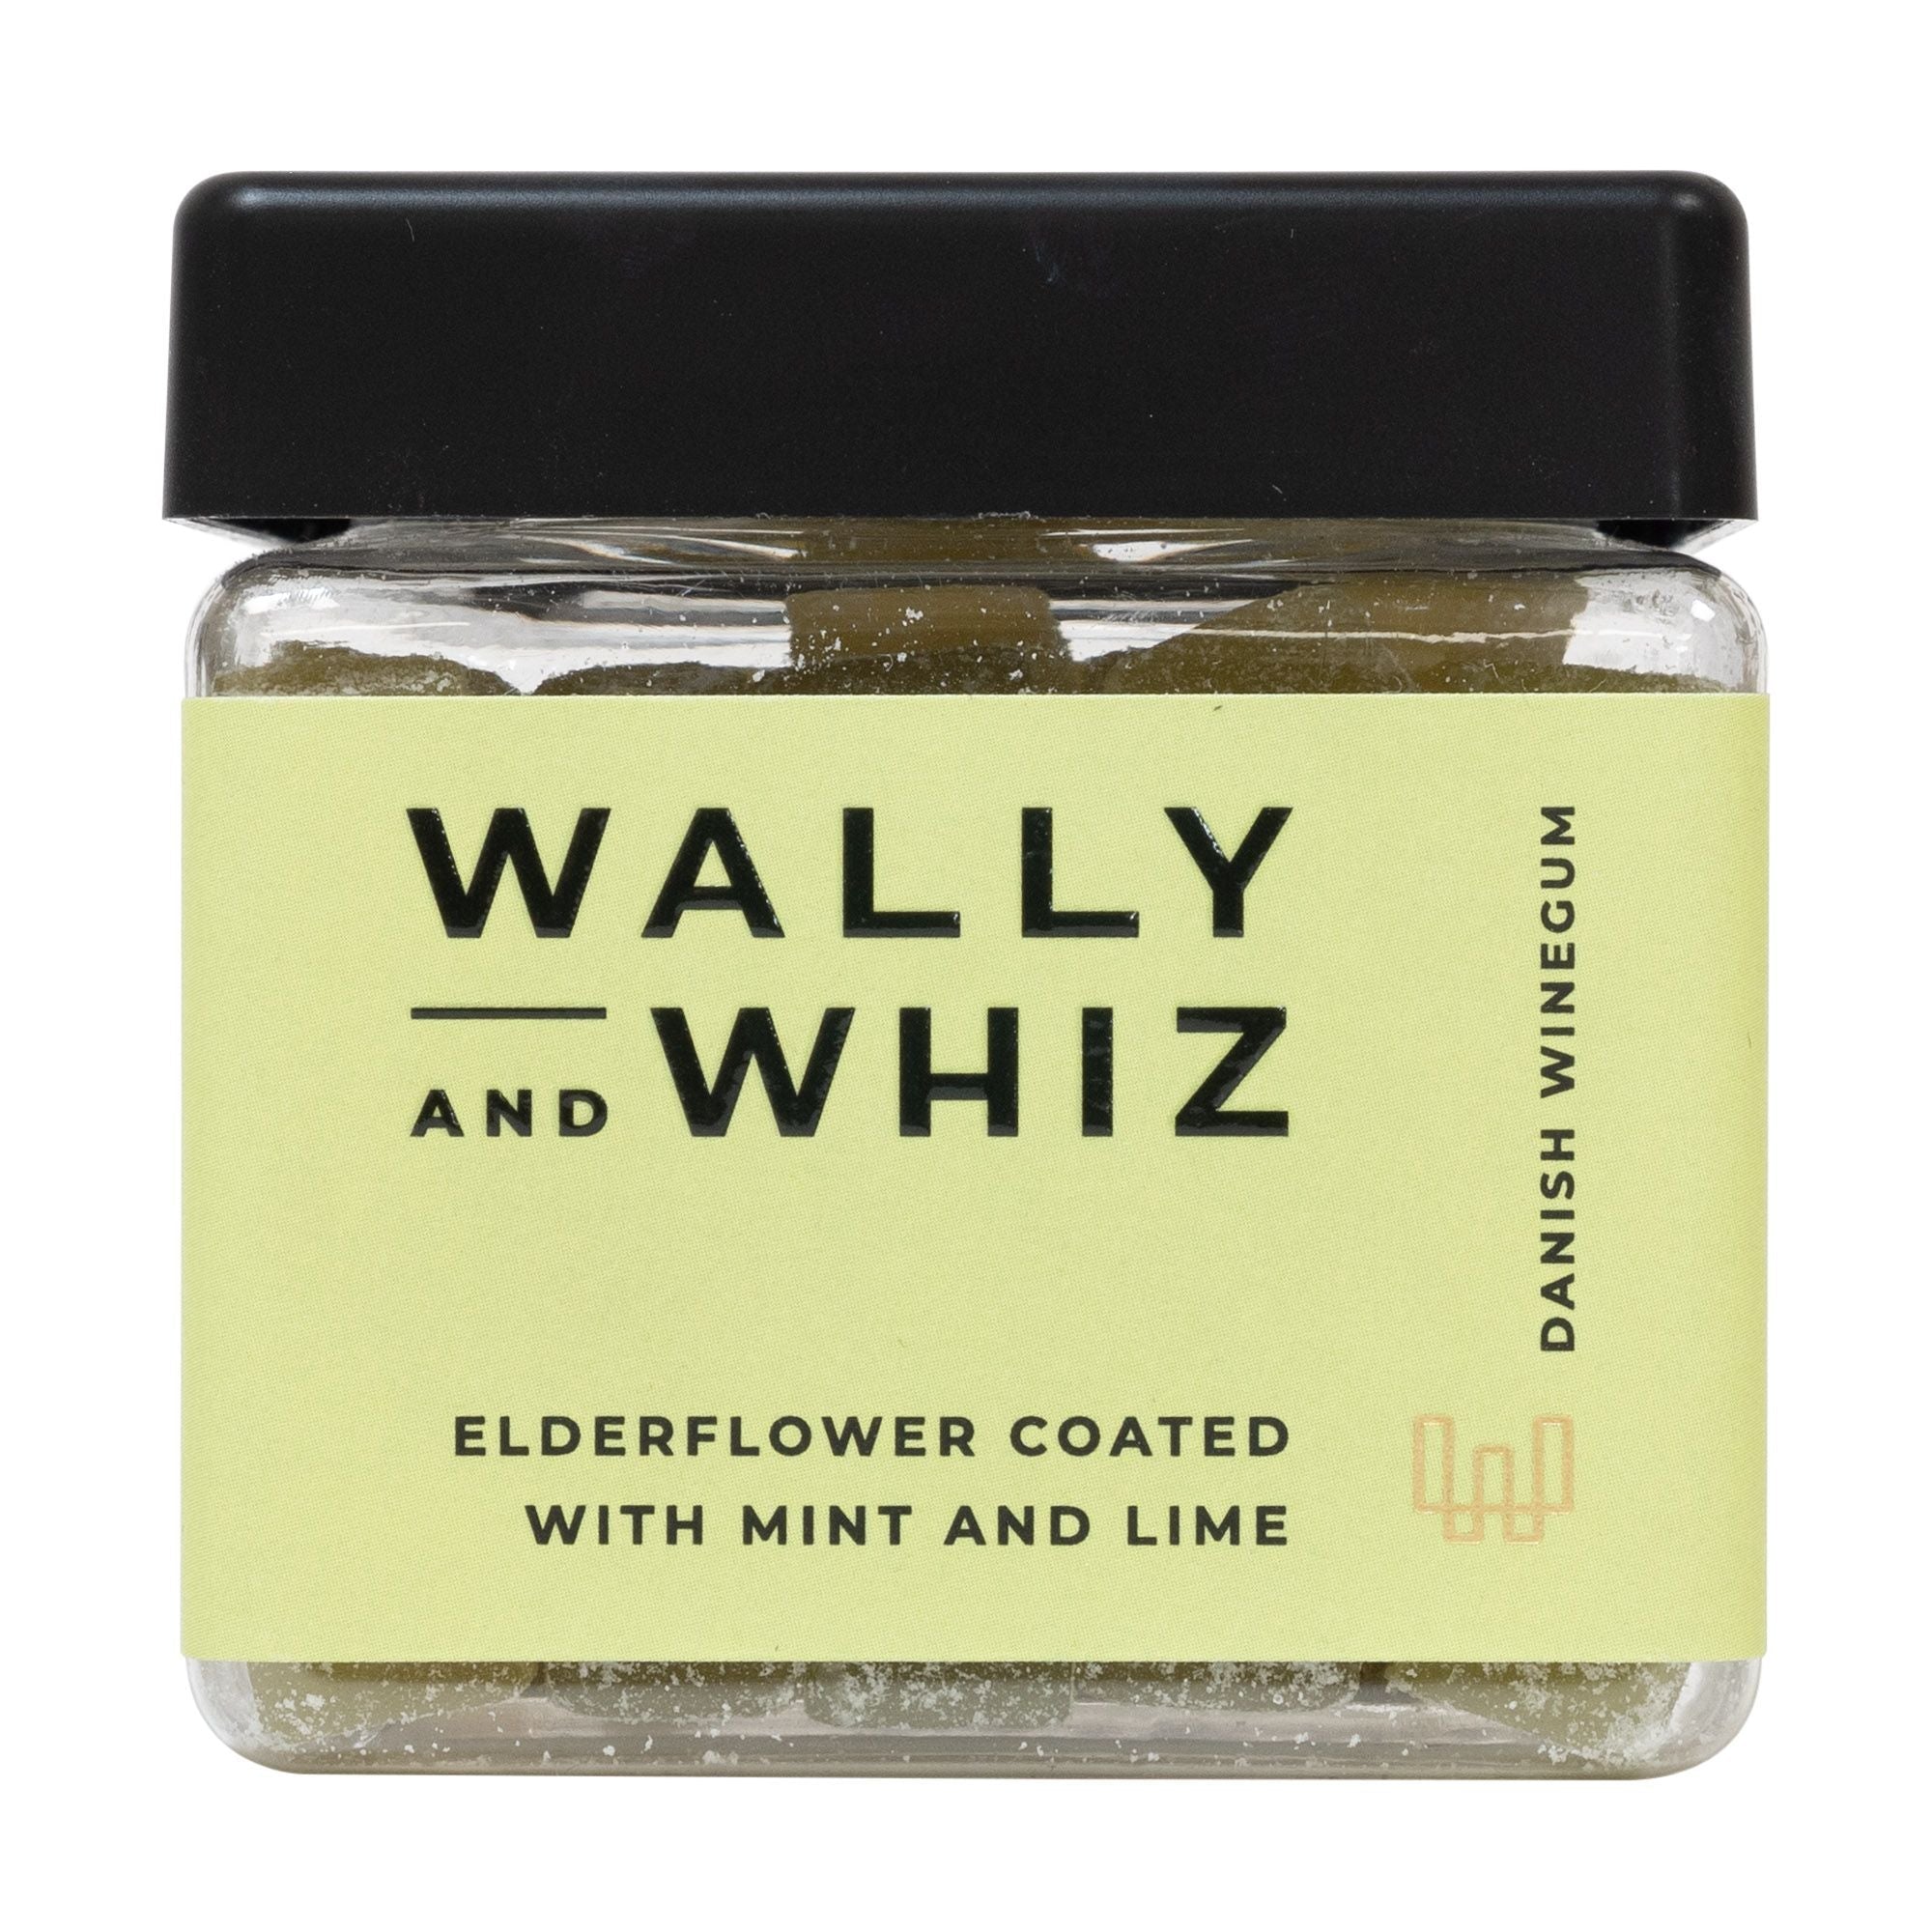 Wally And Whiz Sommarvinnummikub, äldreblomma med mynta och lime, 140 g